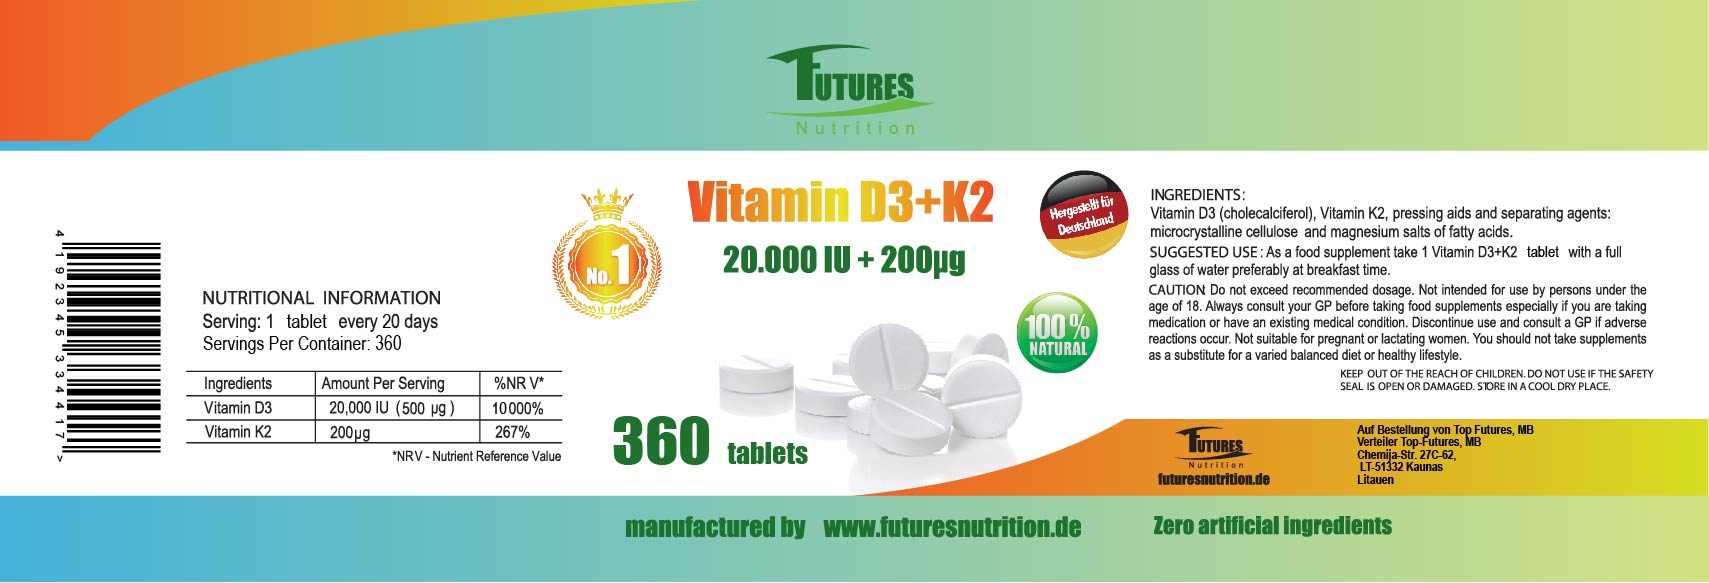 5 x Vitamin D3 + K2 MK7 20,000 IE + 200 μg All Trans